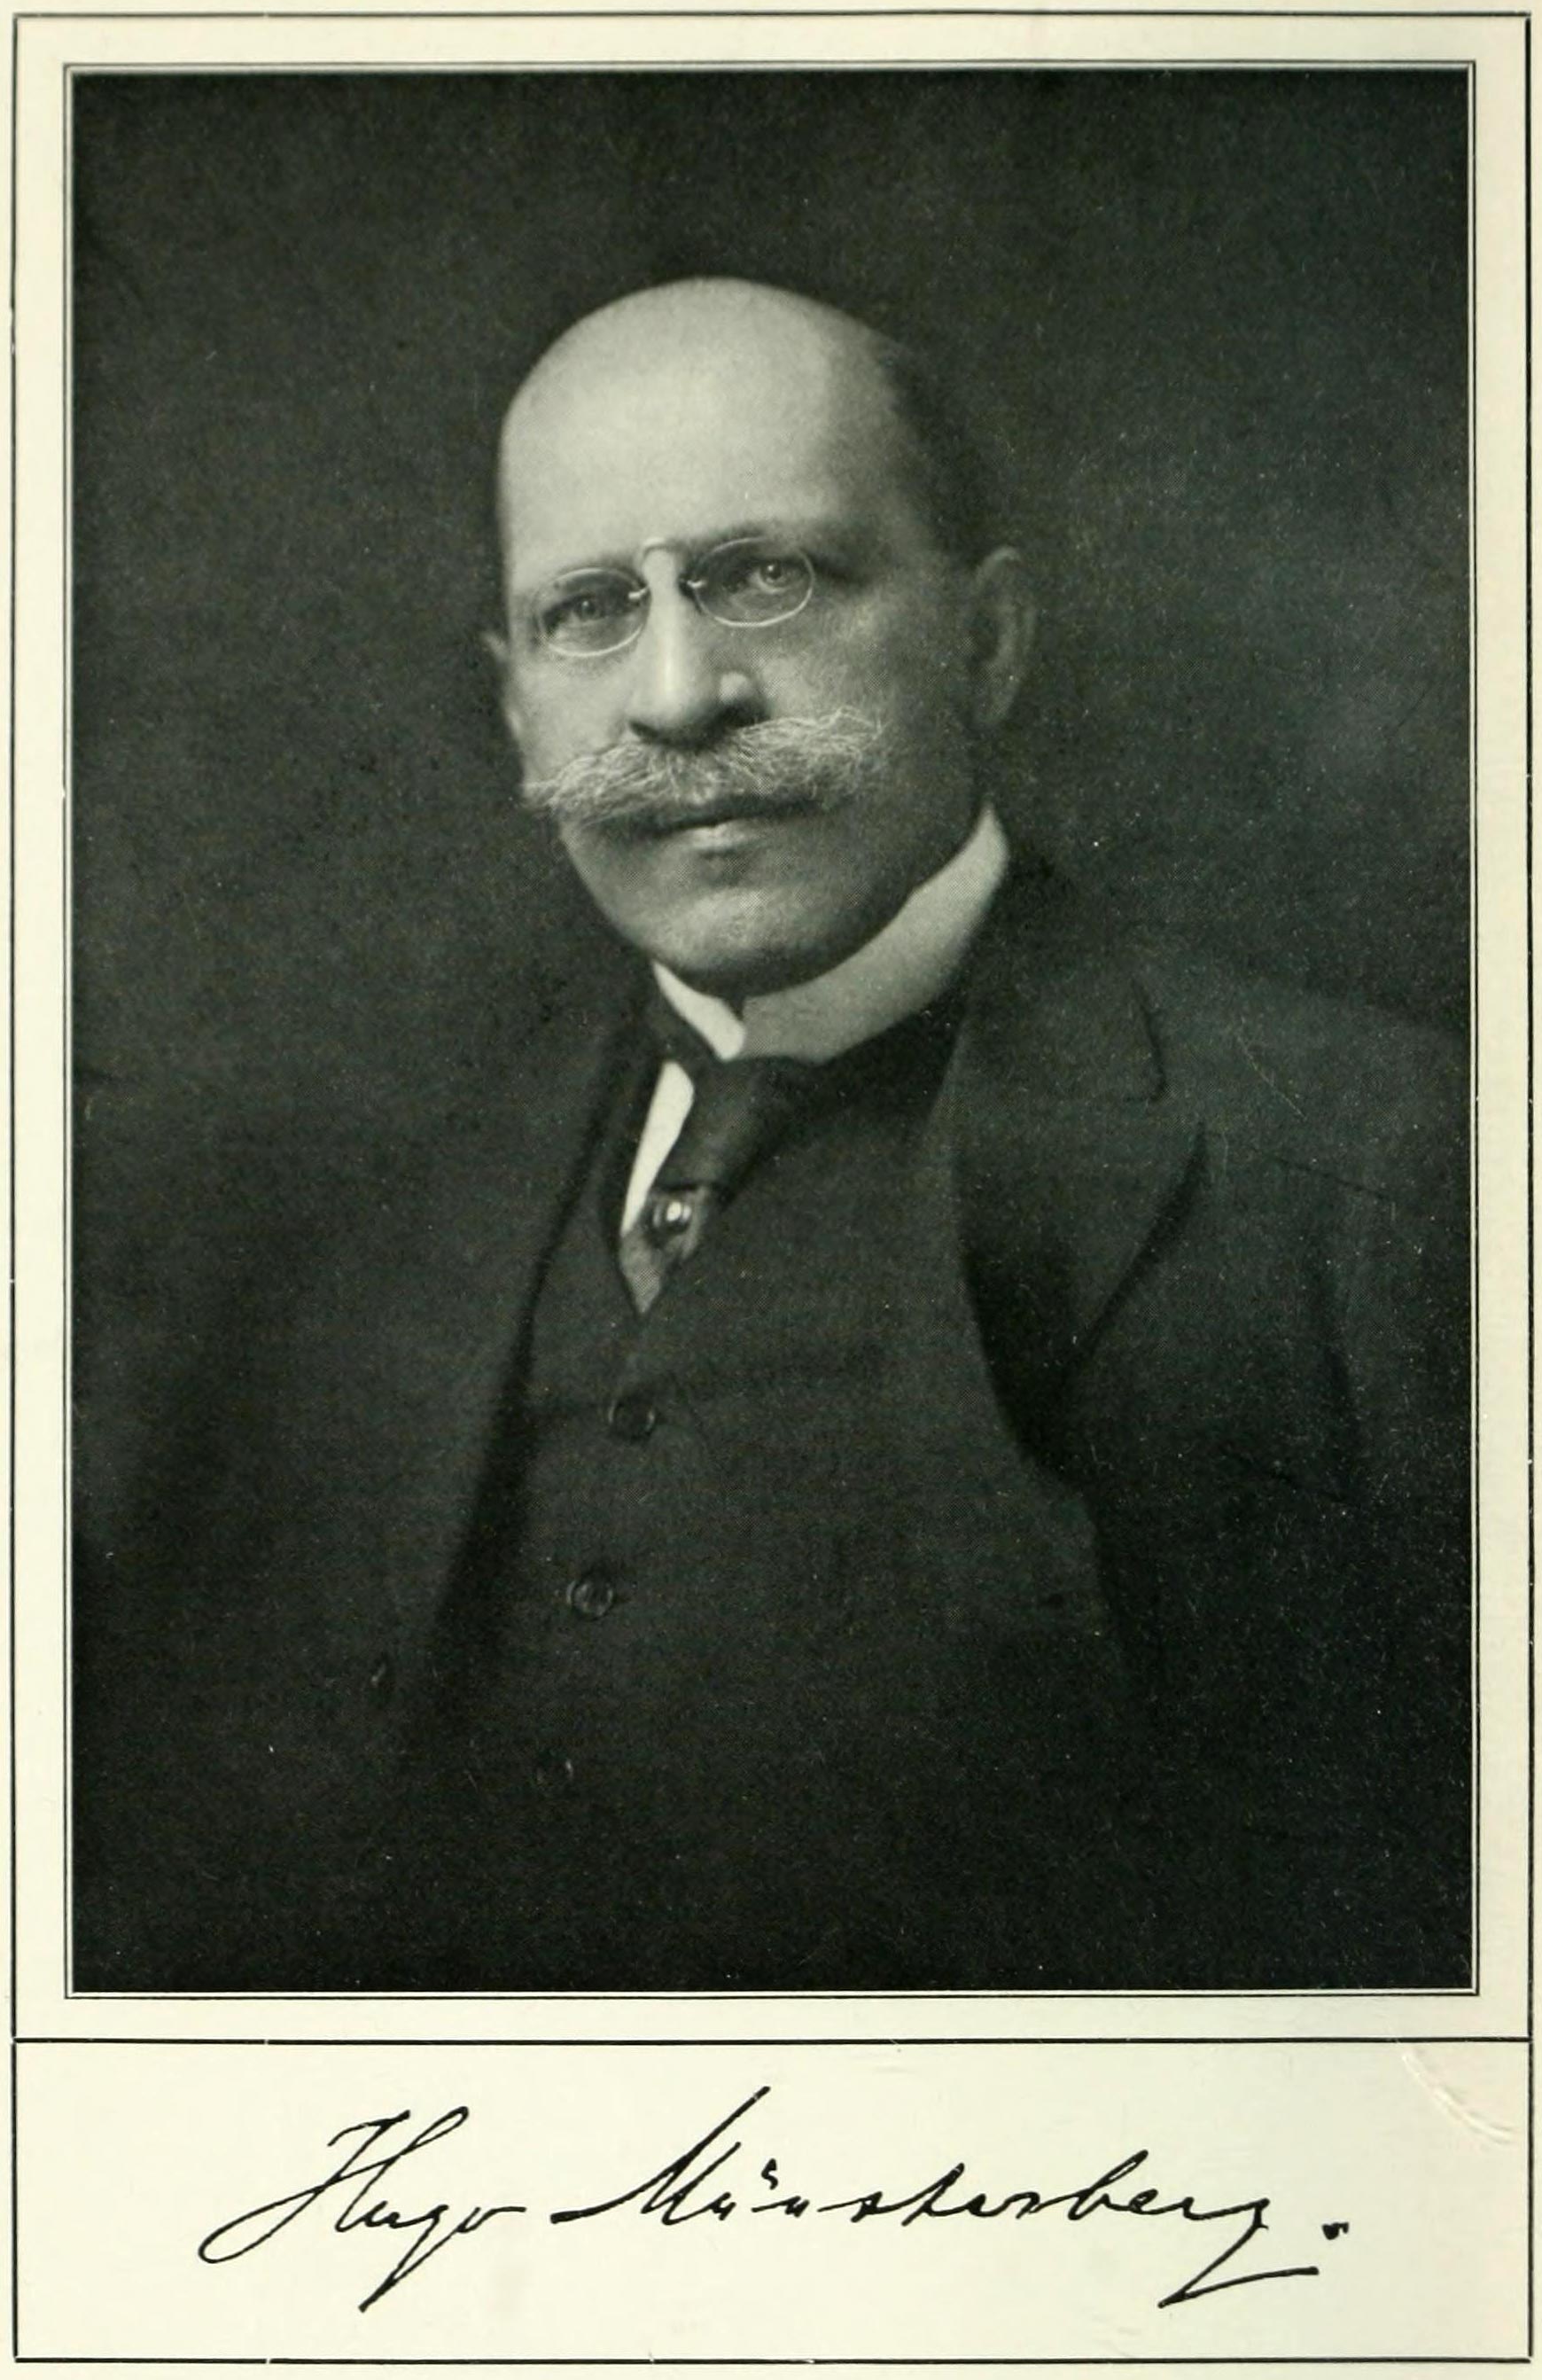 Hugo Münsterberg, ca. 1900